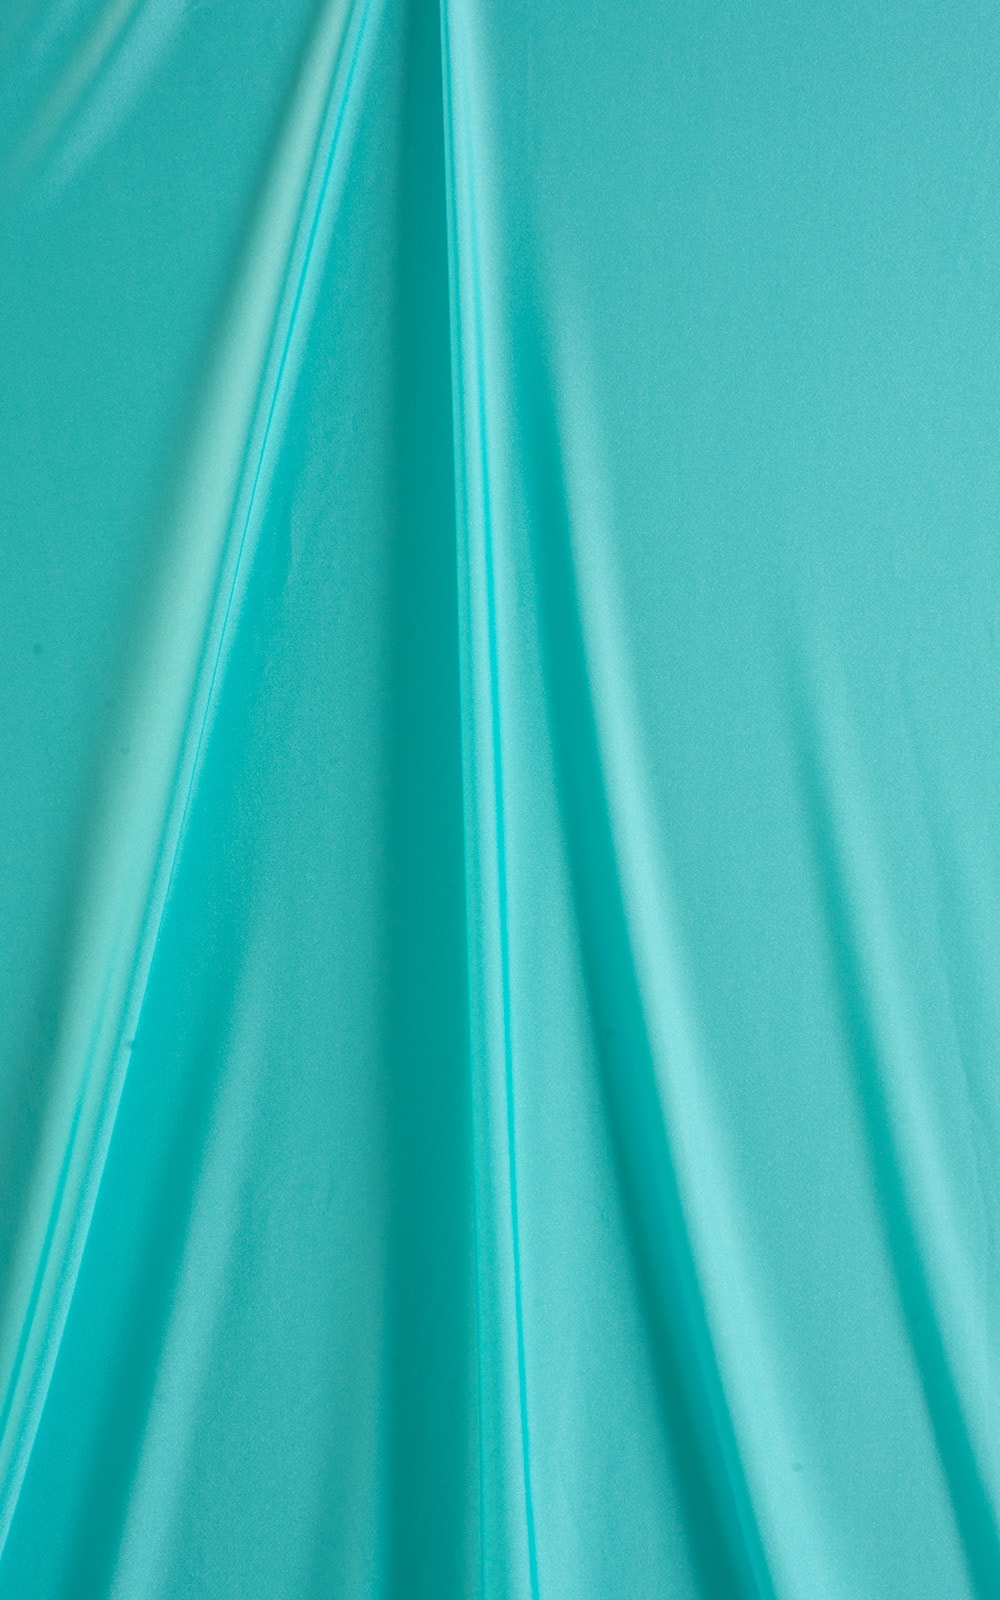 Micro G String Side Tie Bikini in Aquamarine Fabric